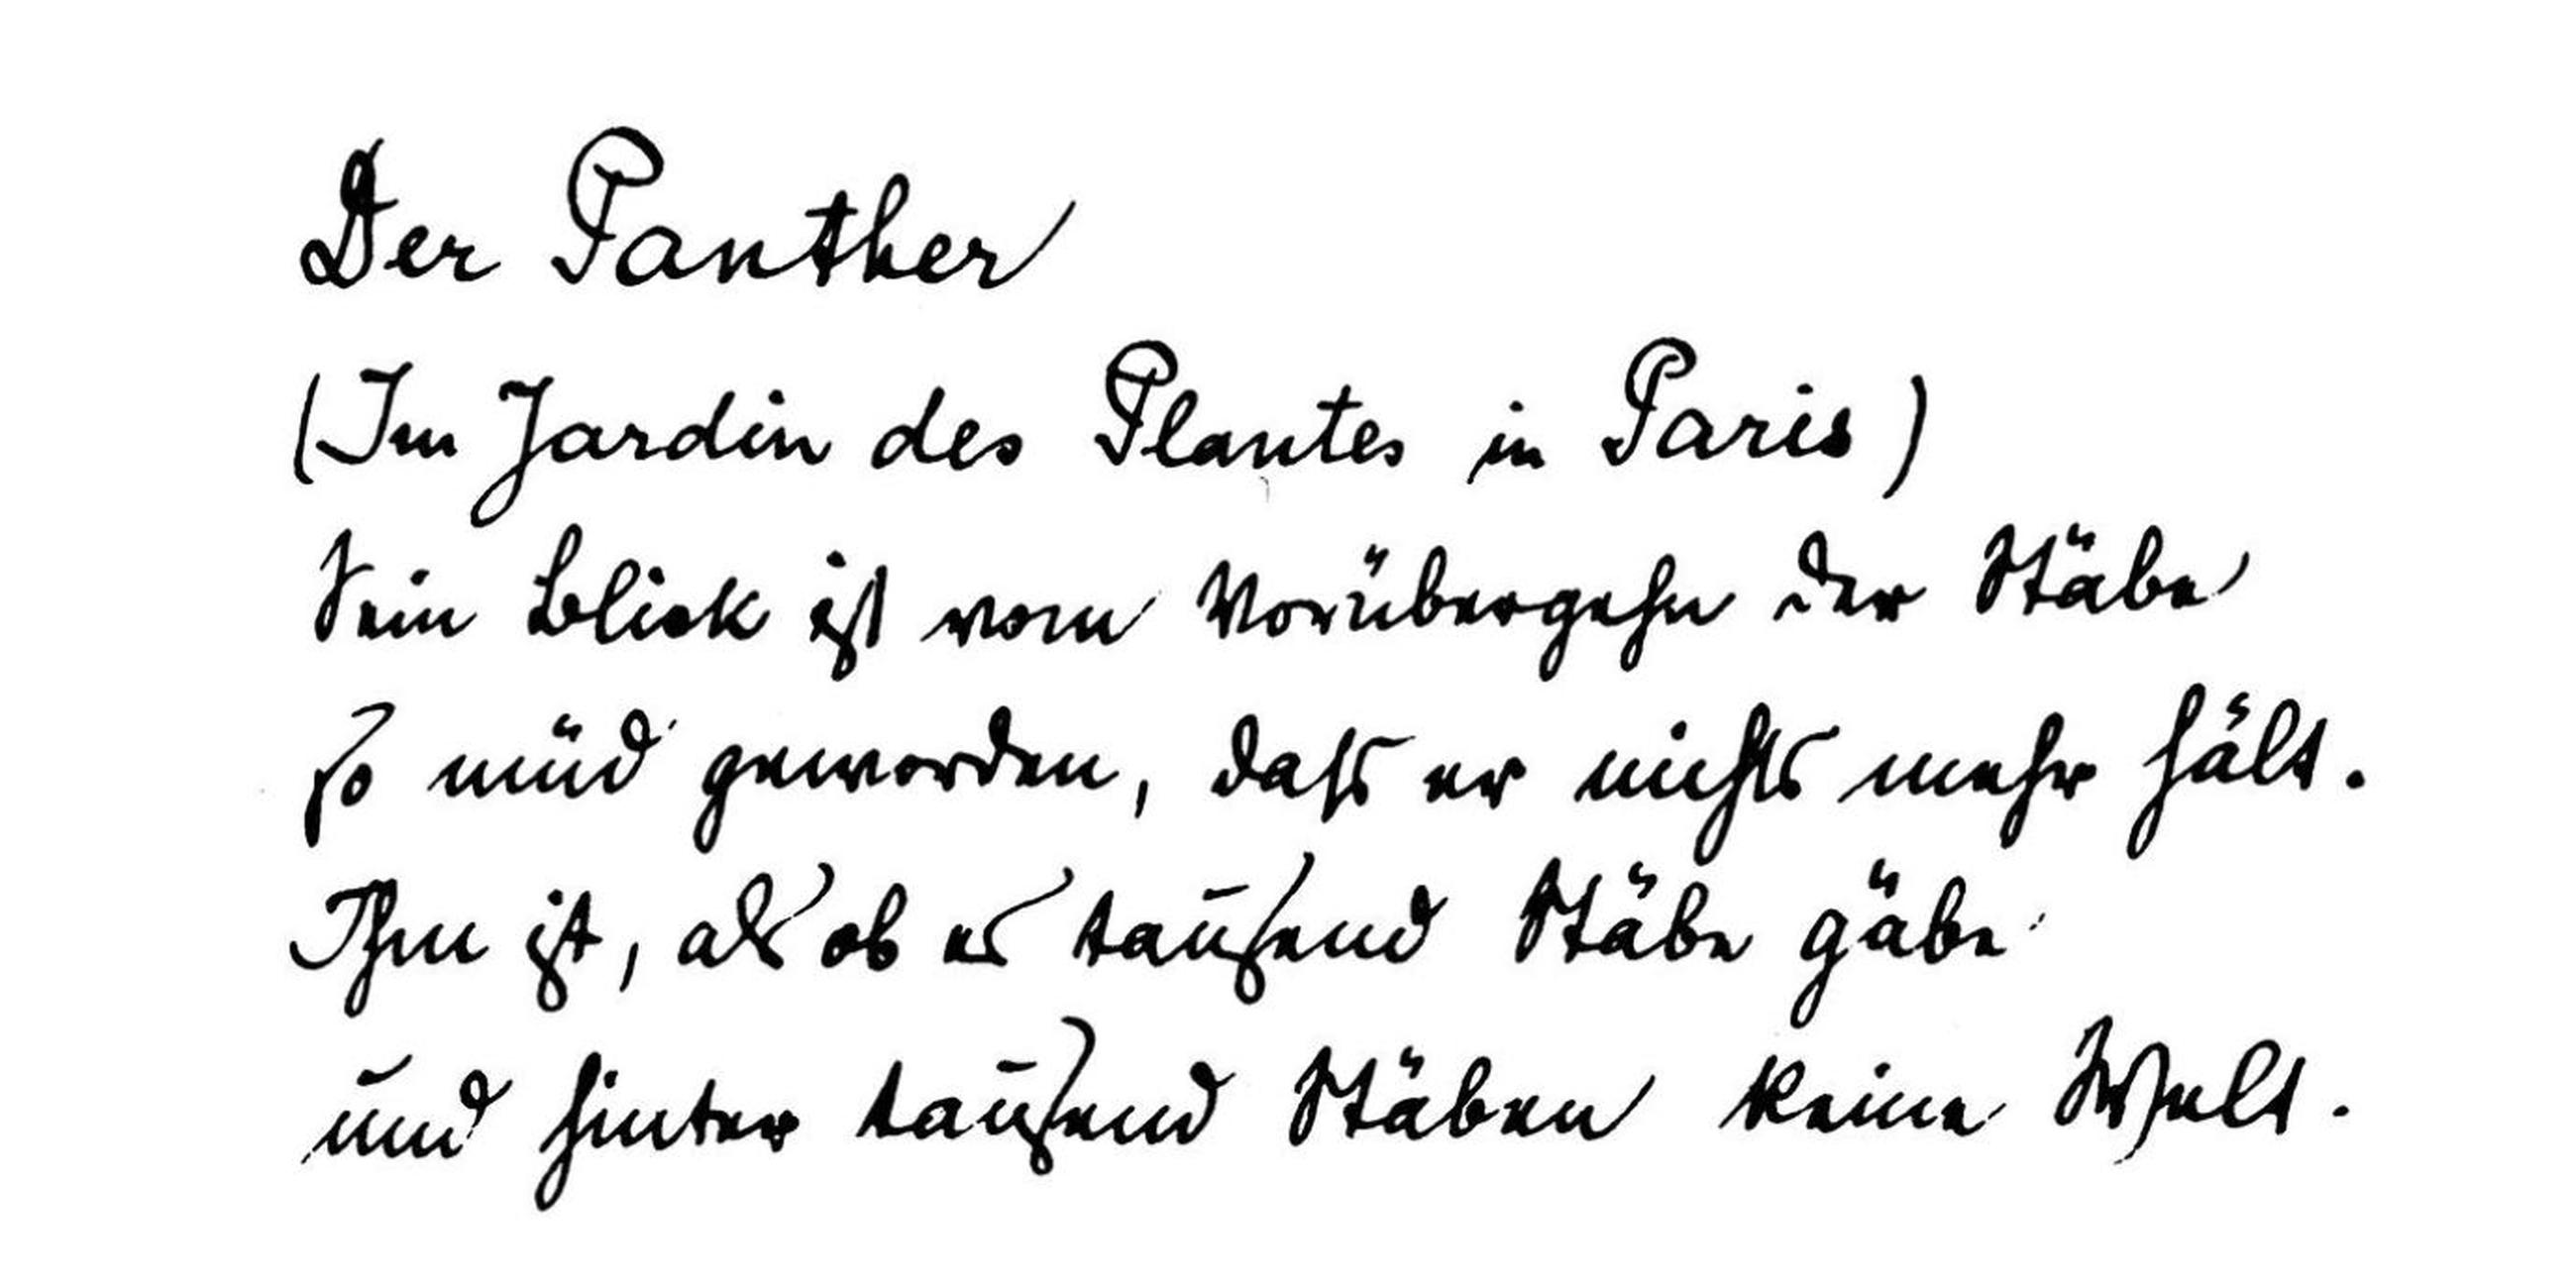 "Der Panther", eines der berühmtesten Rilke-Gedichte